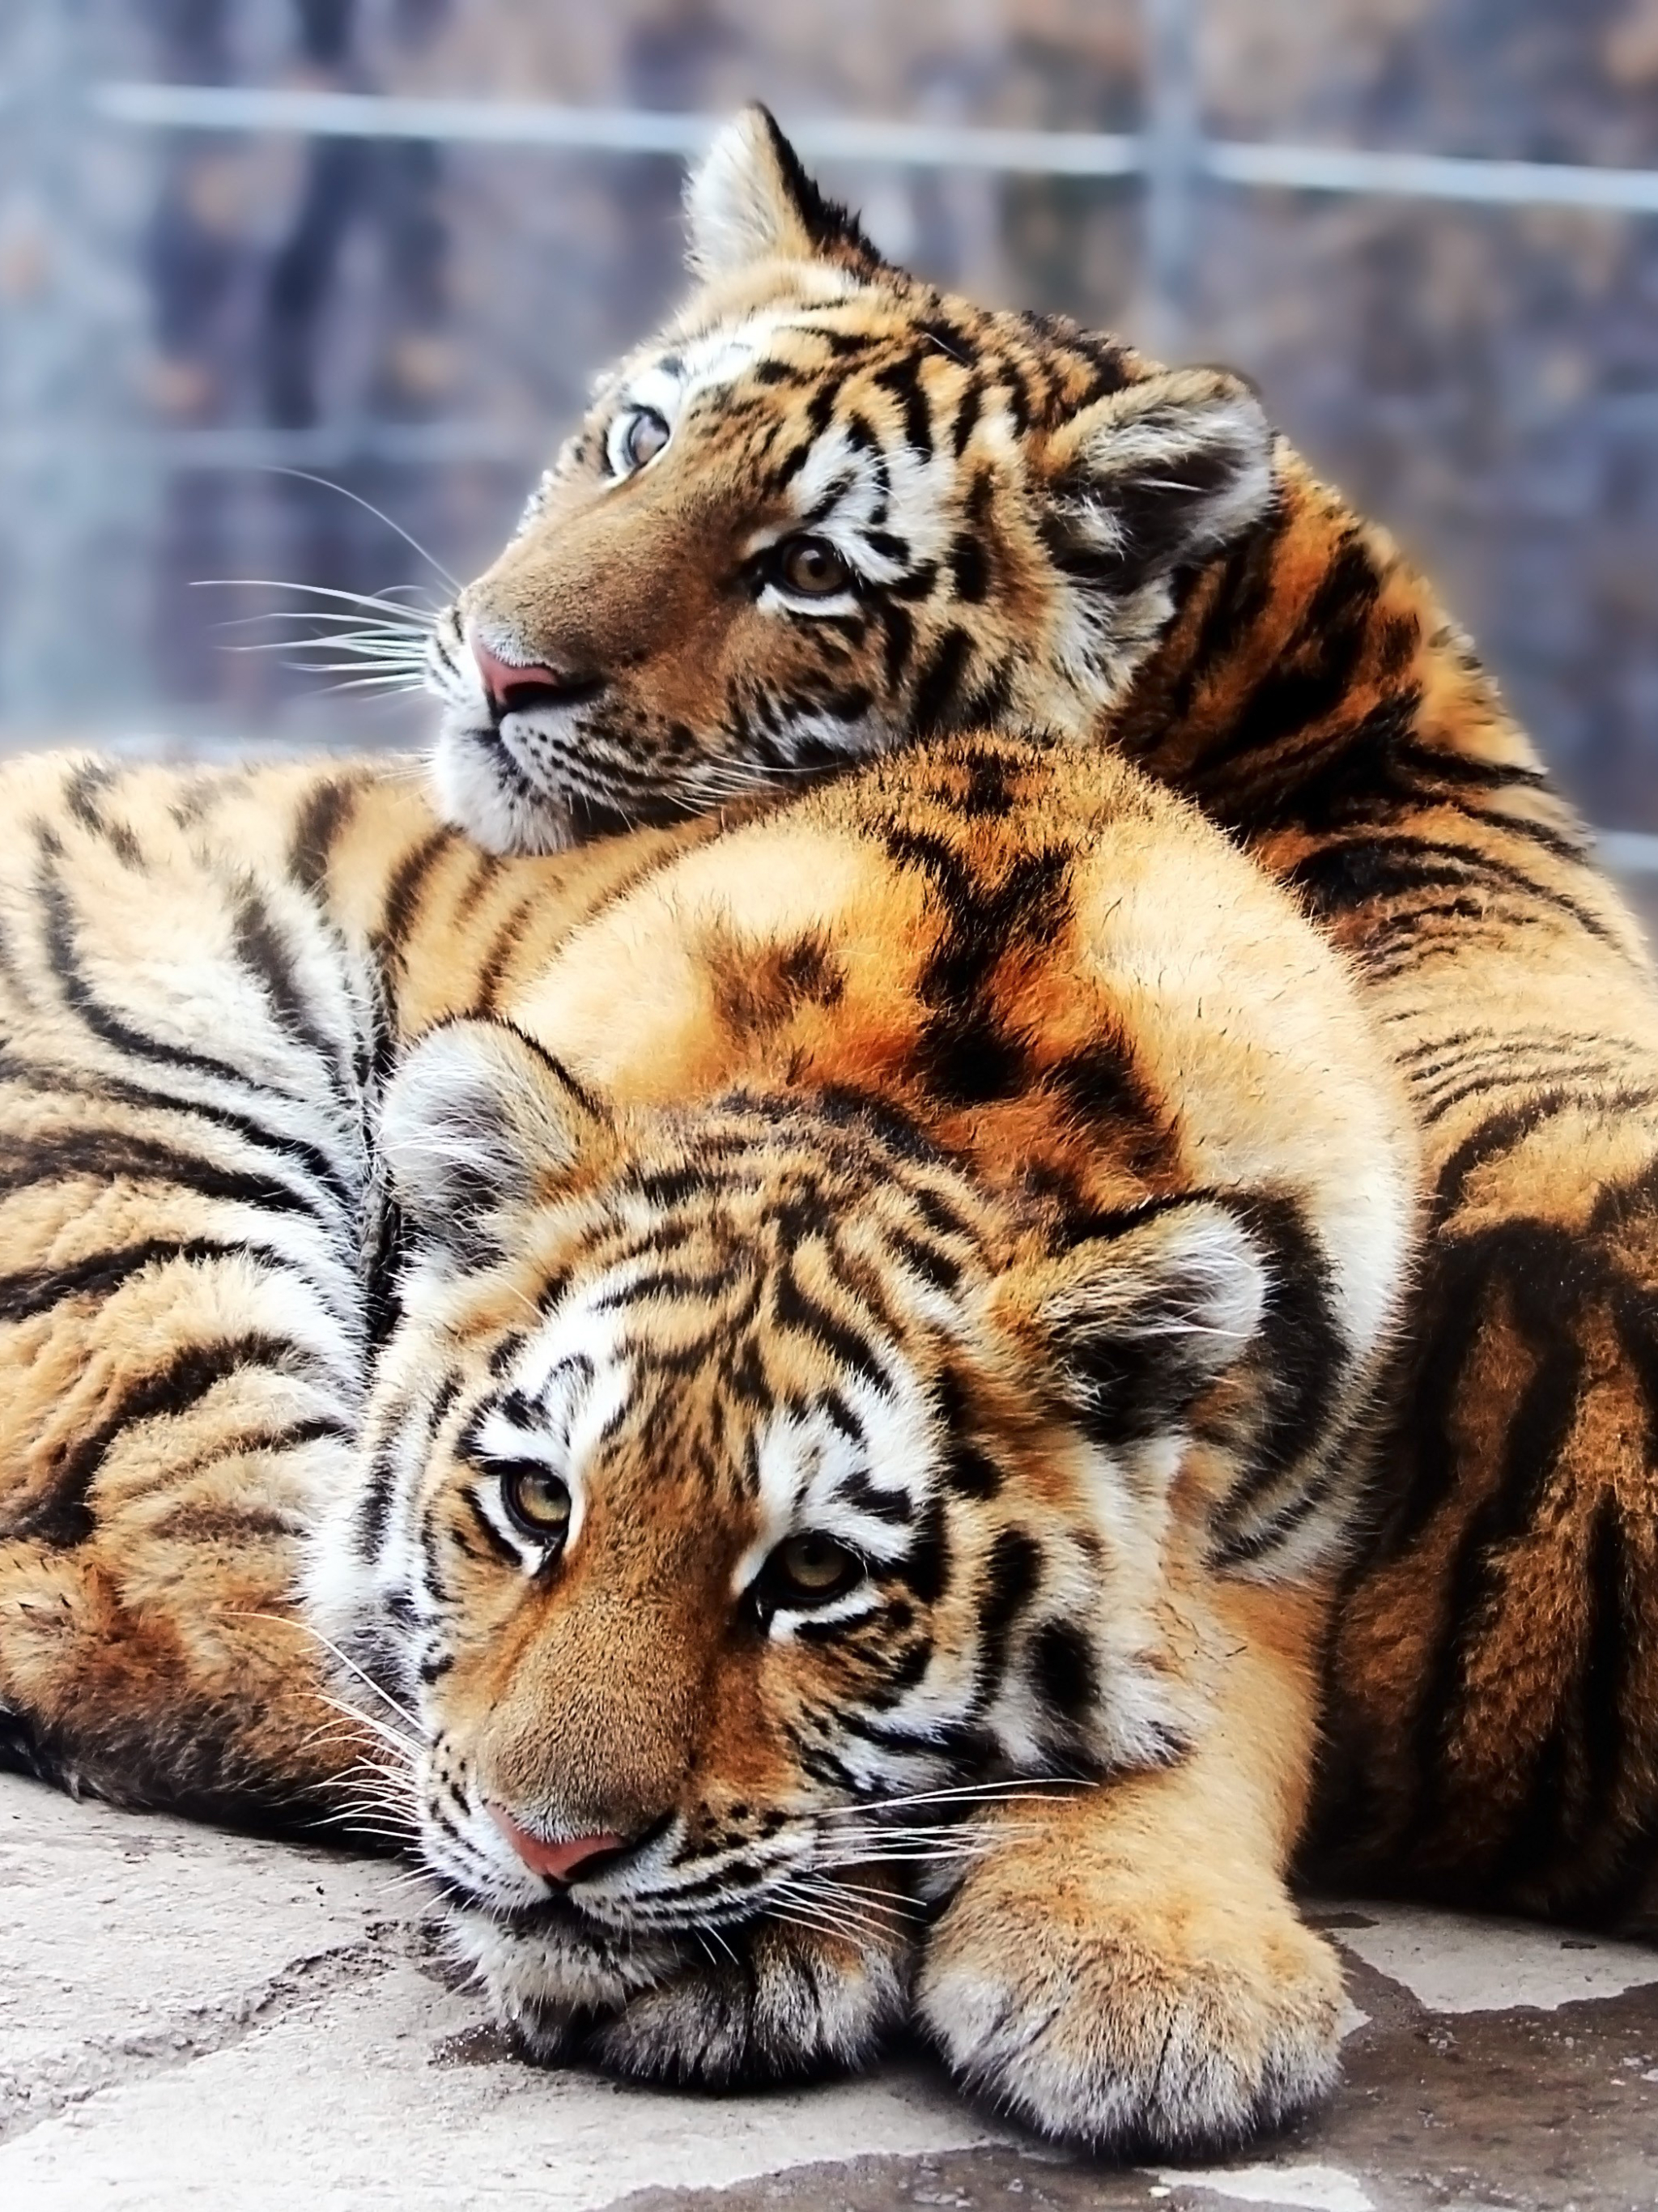 Скачать обои бесплатно Животные, Кошки, Тигр картинка на рабочий стол ПК